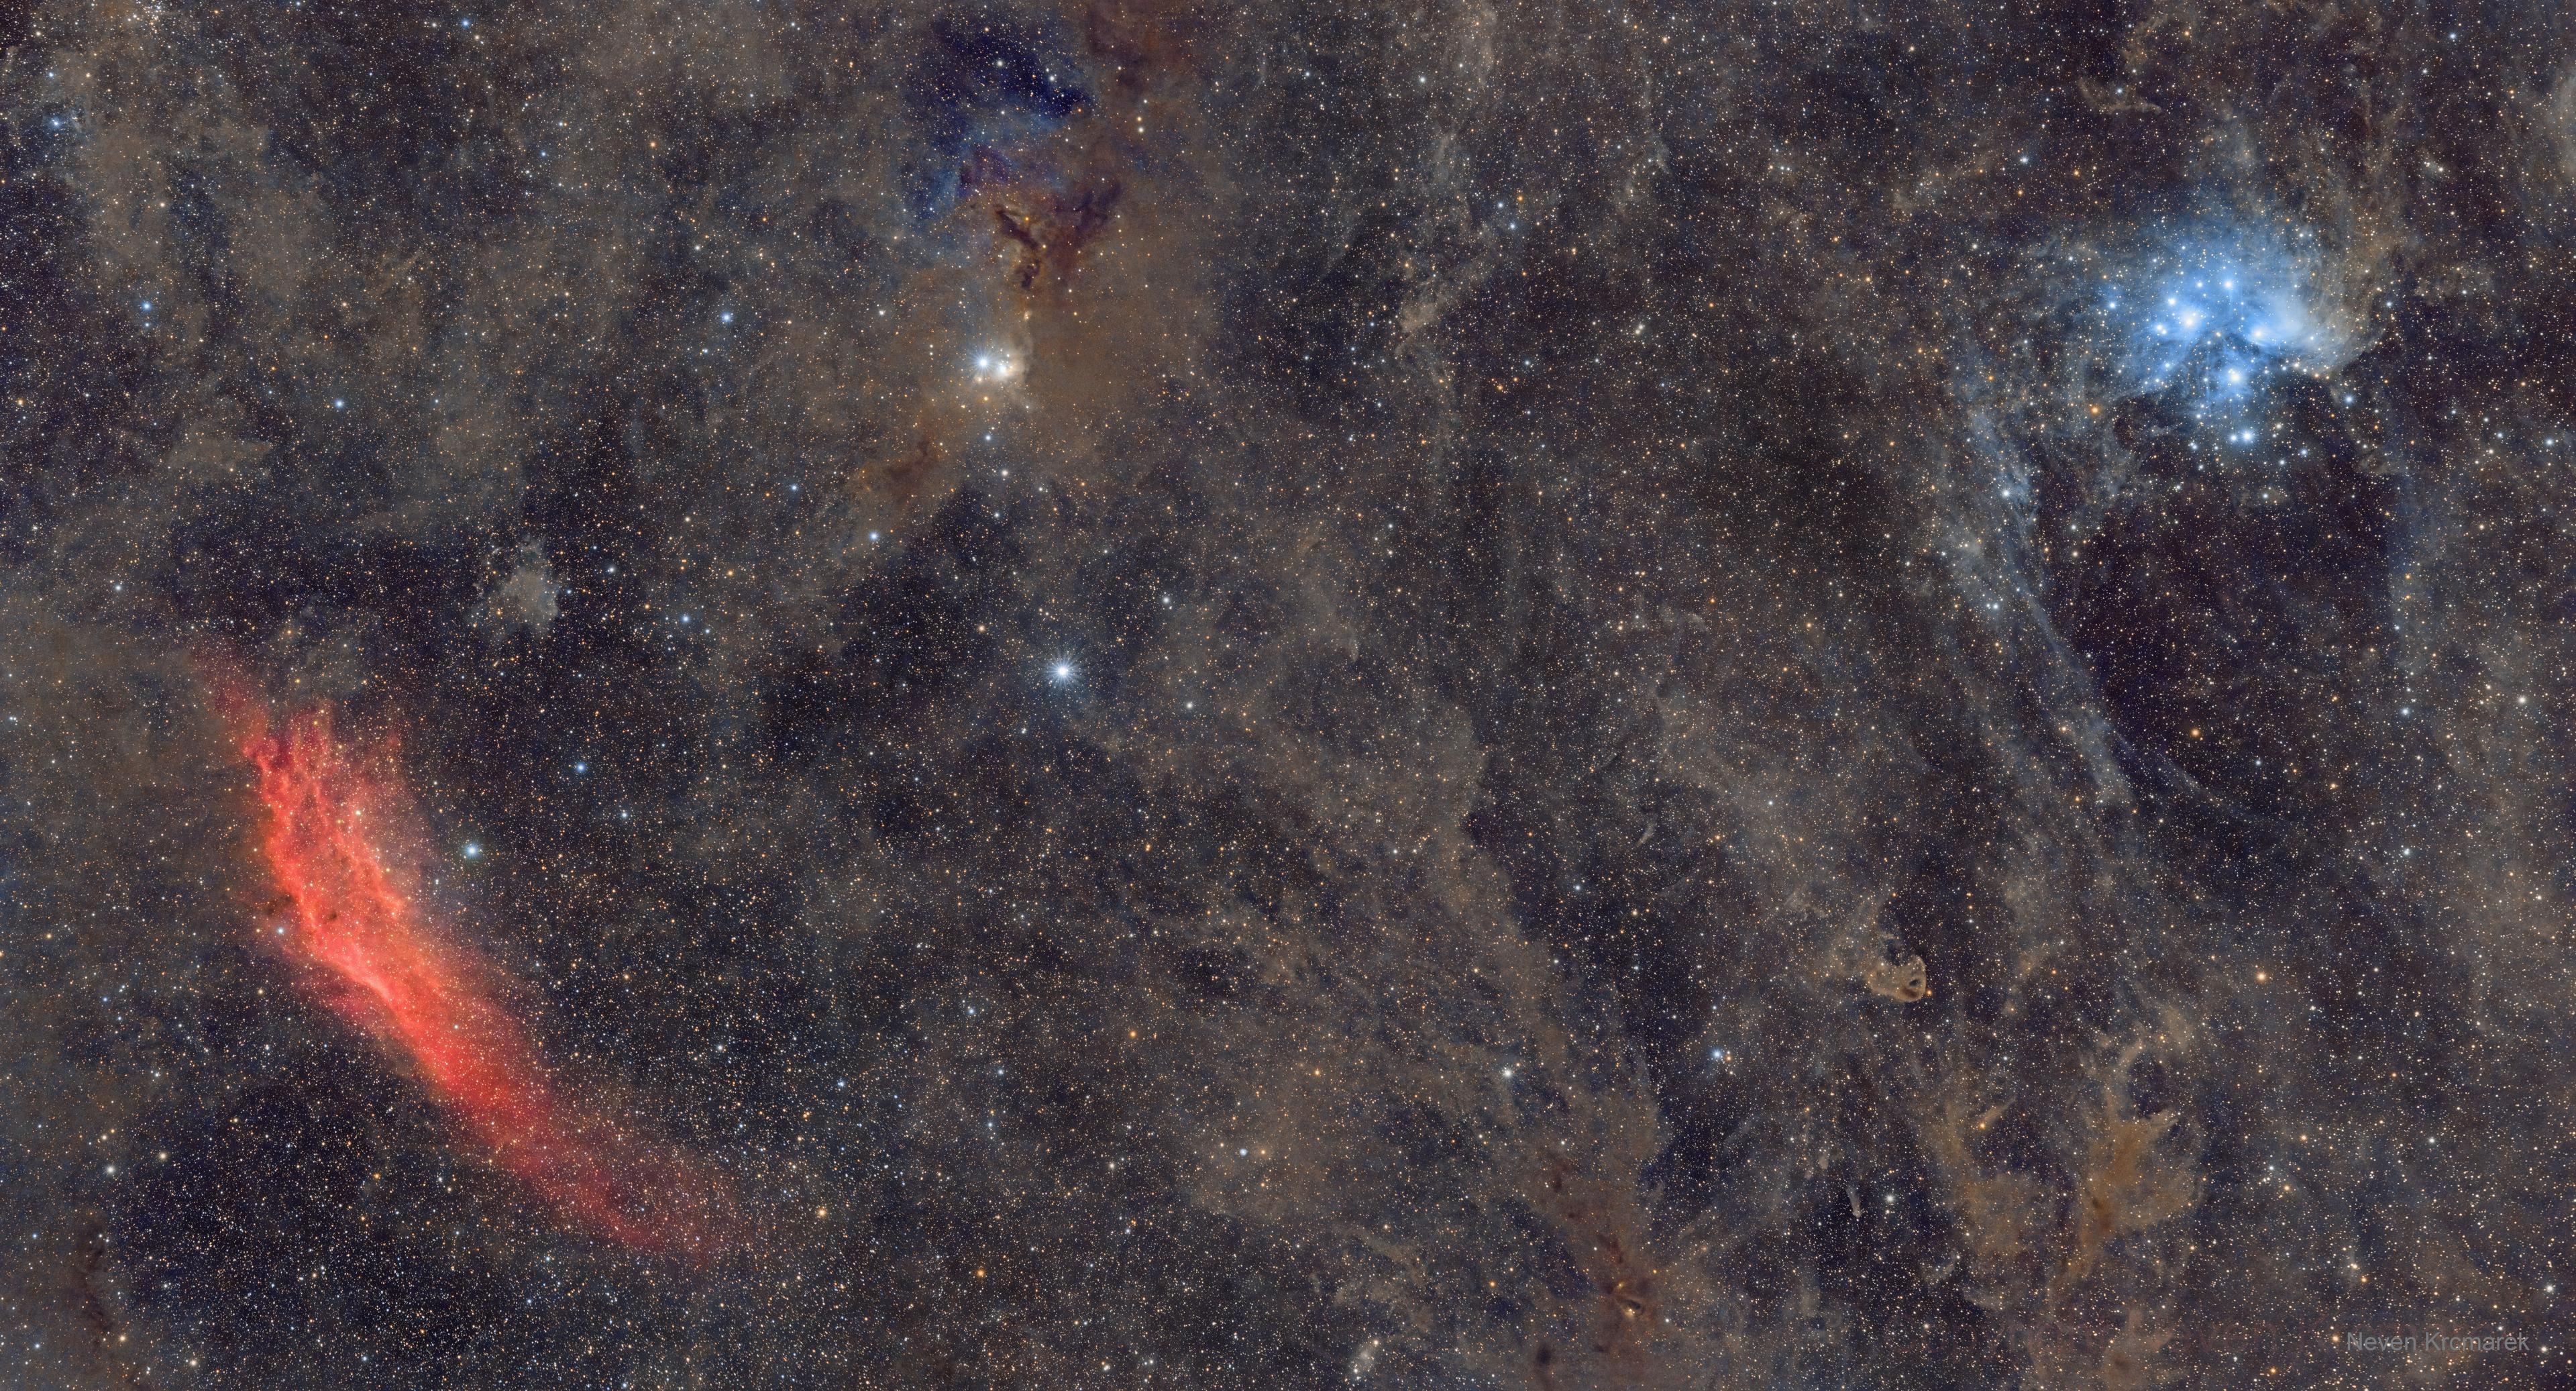 صورة تُظهر عنقود الثريّا النجمي بلونه الأزرق أعلى اليمين وسديم كاليفورنيا الأحمر أسفل اليسار، وبينهما الفضاء بأغبرته ونجومه وسدمه